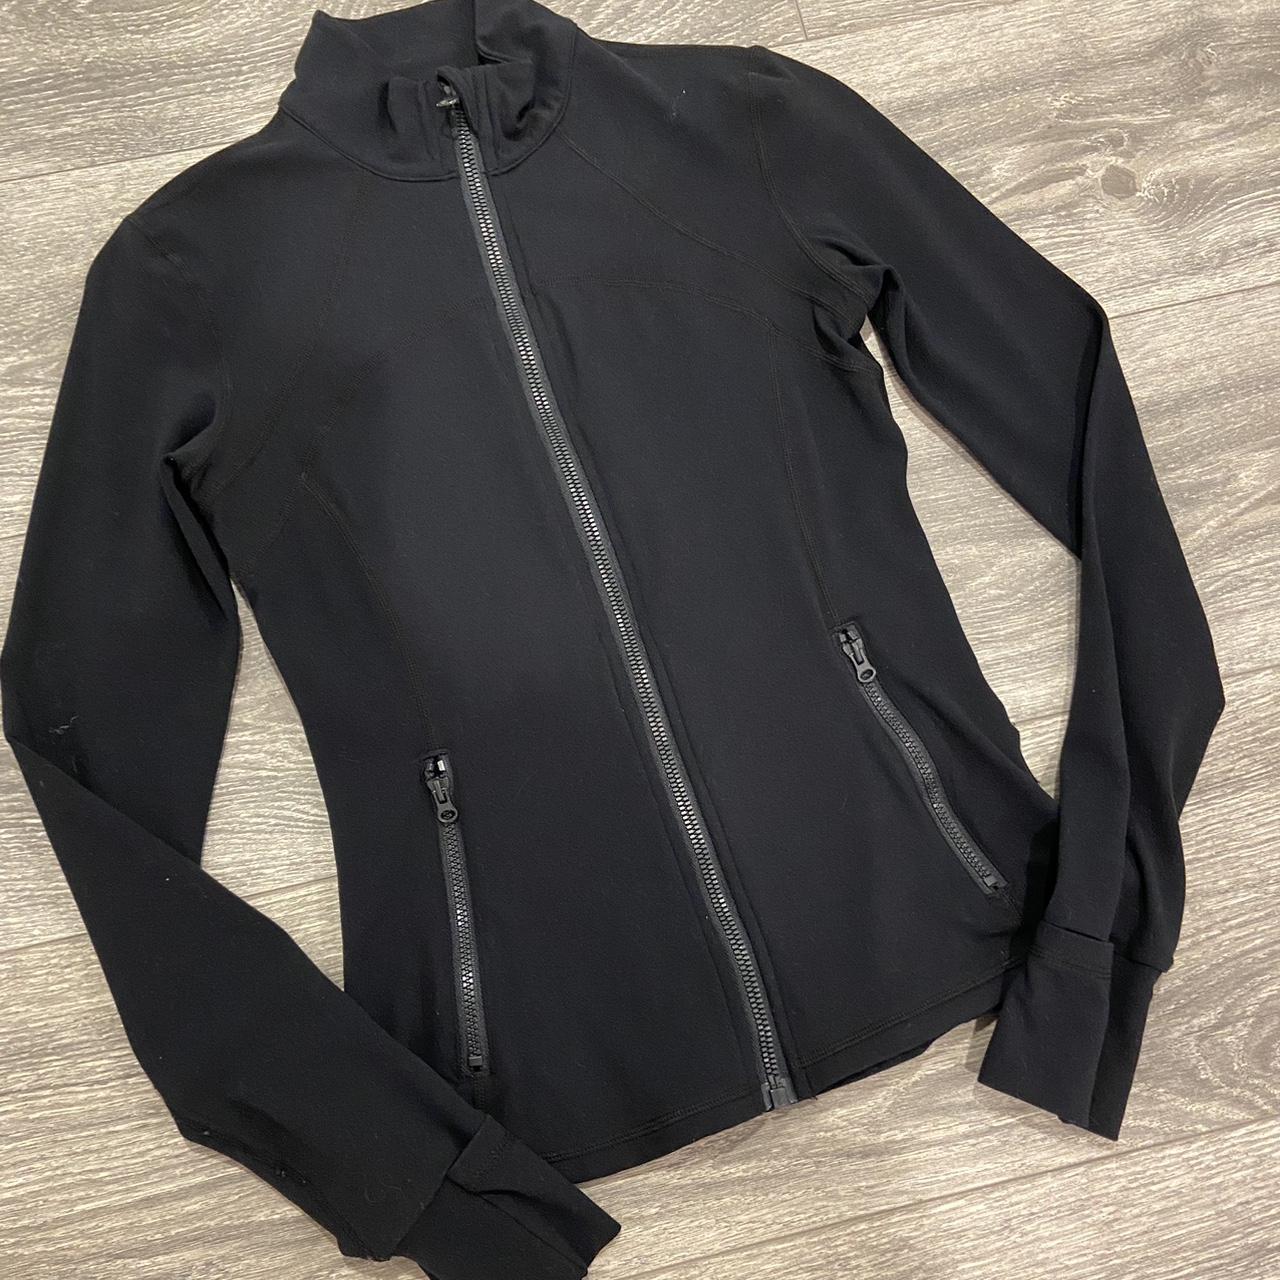 Lululemon black hooded define jacket, size 8. Does - Depop